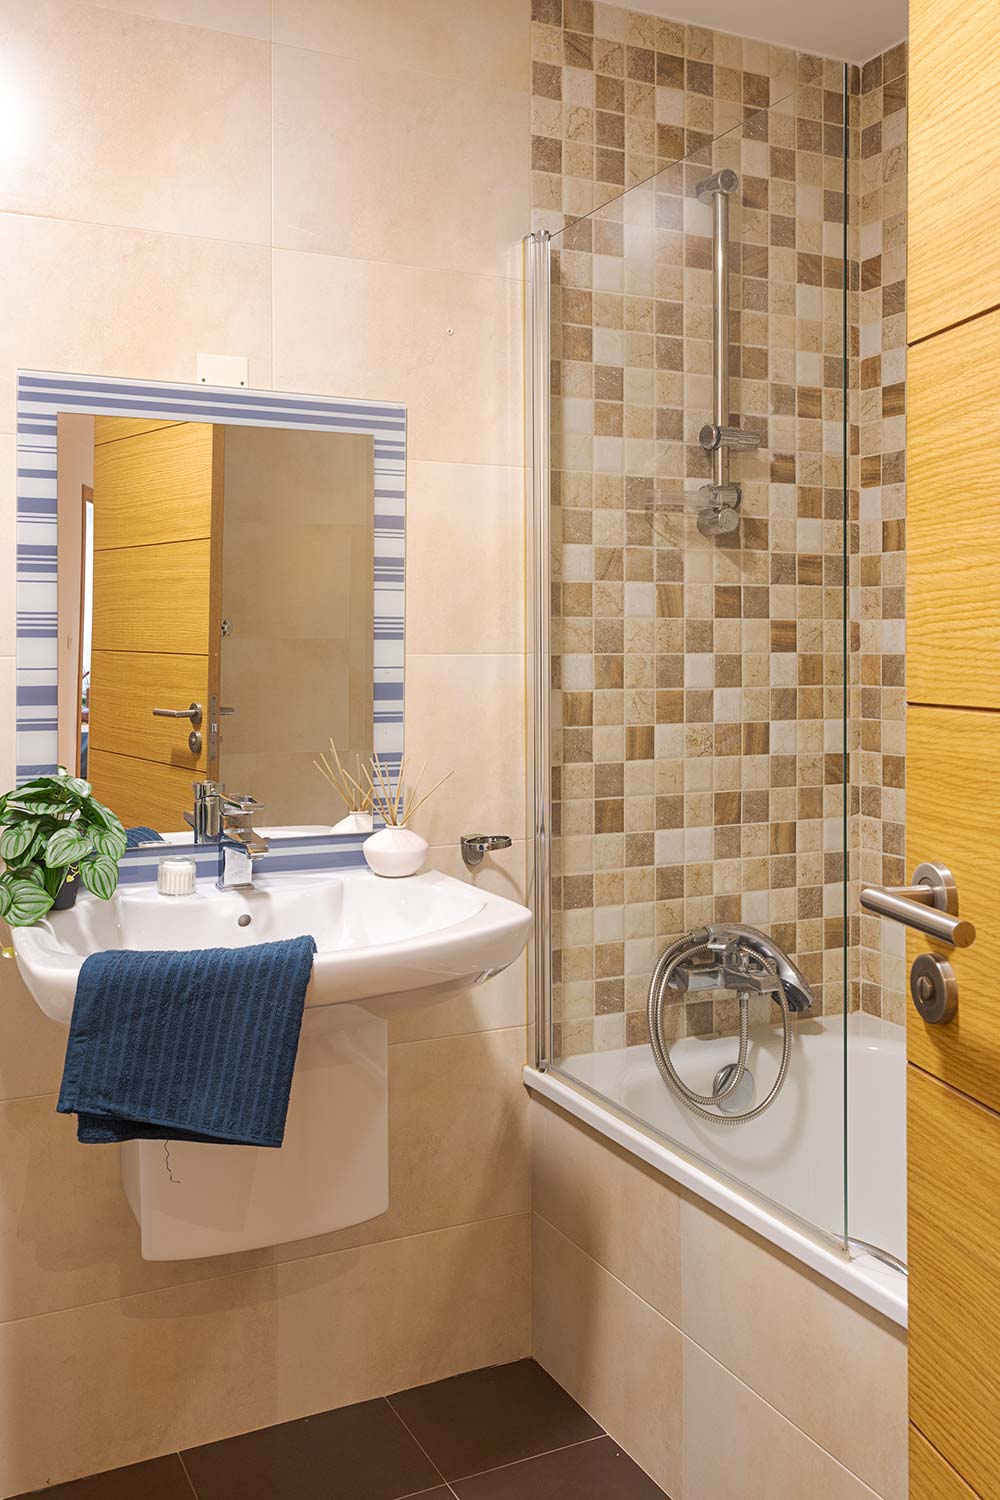 Baño contemporáneo con combinación de azulejos beige y marrones, destacando una bañera con mampara de vidrio y una pared de acento de azulejos a cuadros. Lavabo con espejo amplio y detalles como una toalla azul colgada y una planta verde que añade un toque natural al espacio